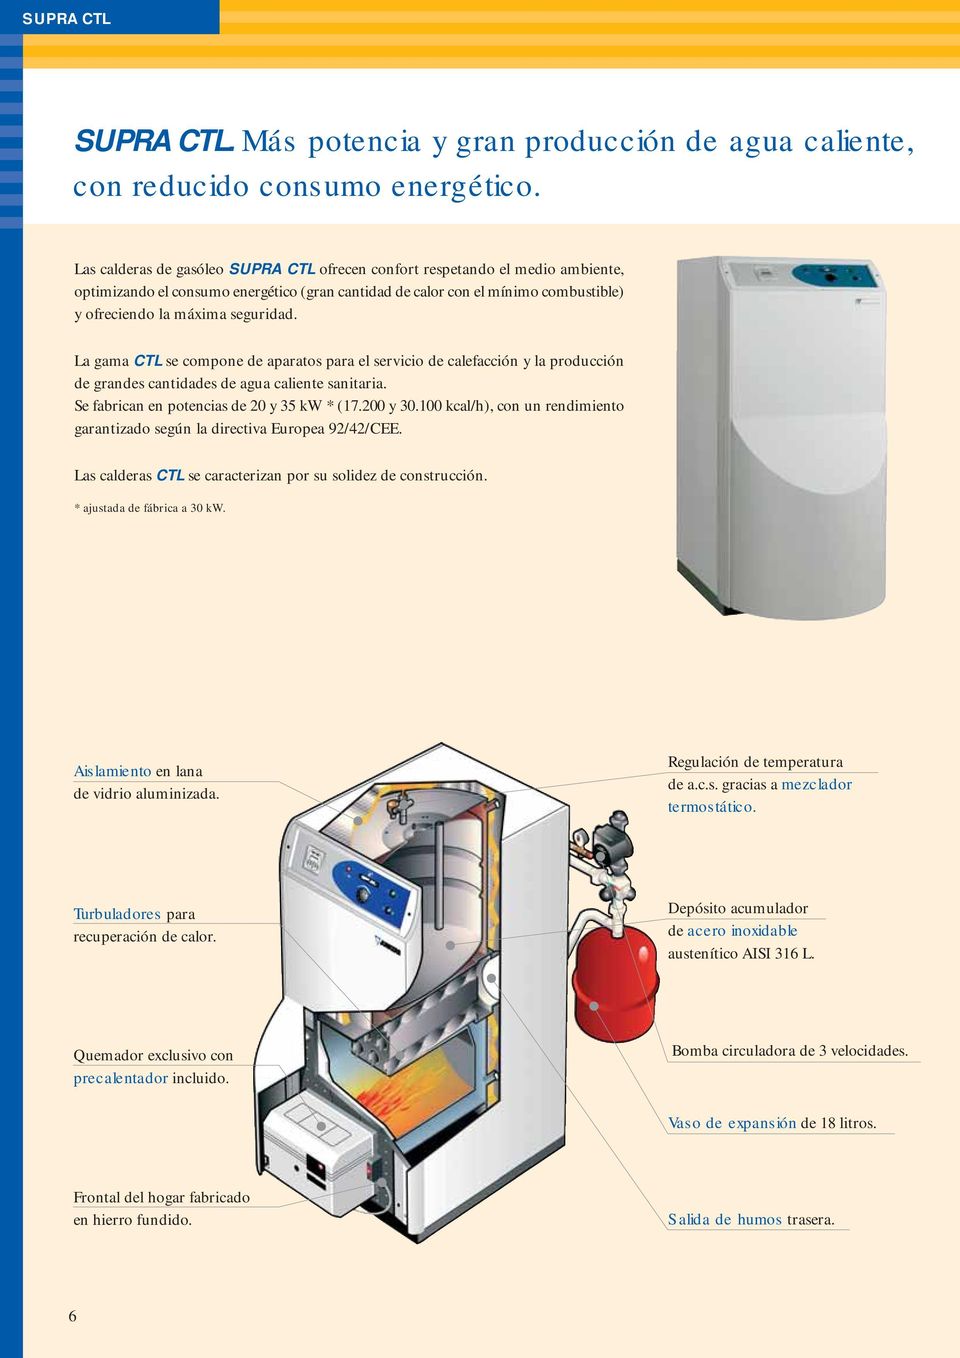 La gama CTL se compone de aparatos para el servicio de calefacción y la producción de grandes cantidades de agua caliente sanitaria. Se fabrican en potencias de 20 y 35 kw * (17.200 y 30.